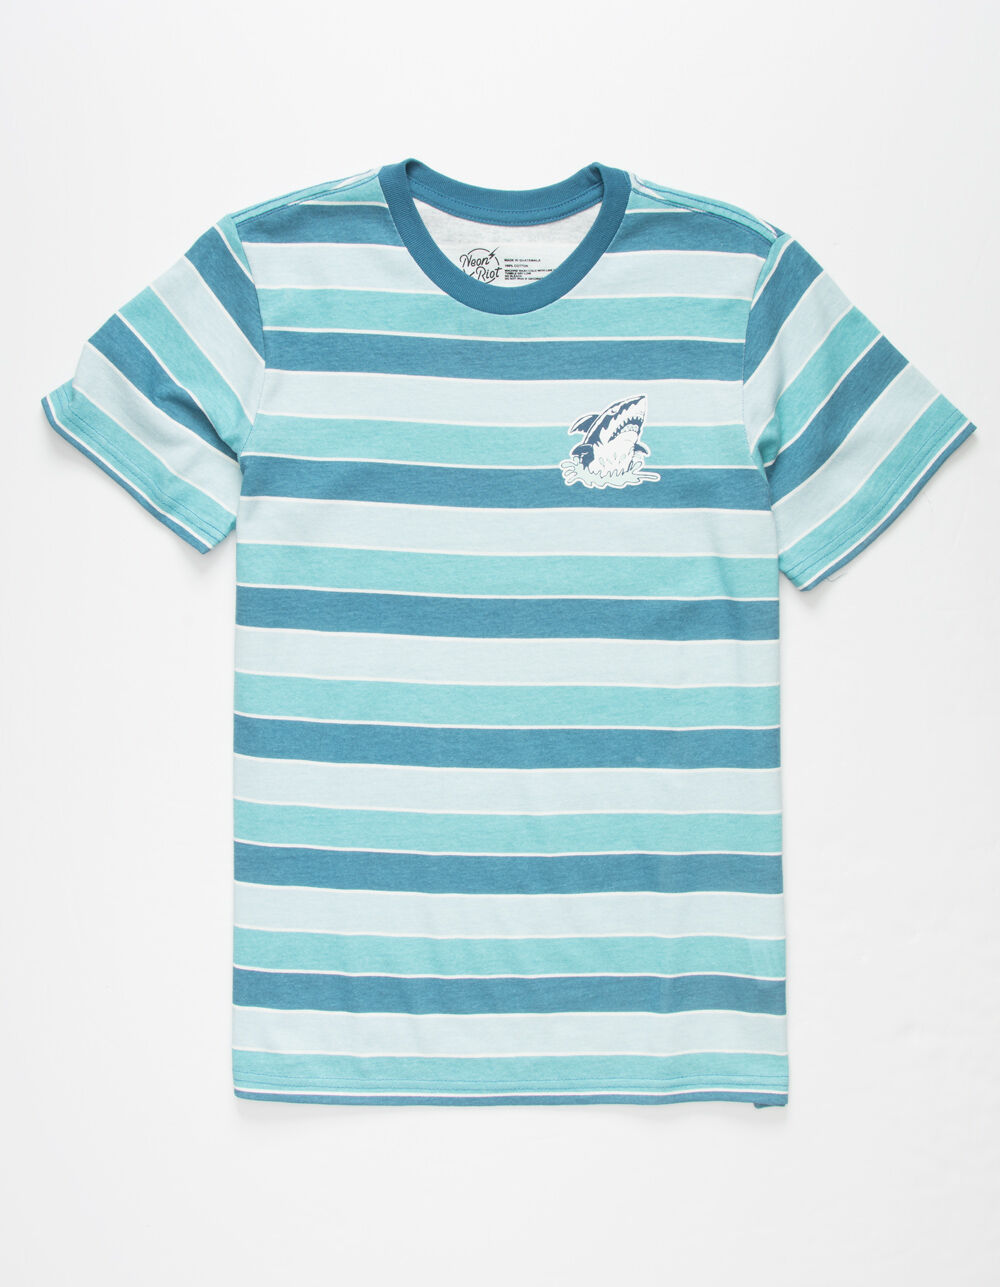 NEON RIOT Shark Jump Stripe Boys T-Shirt - BLUE | Tillys